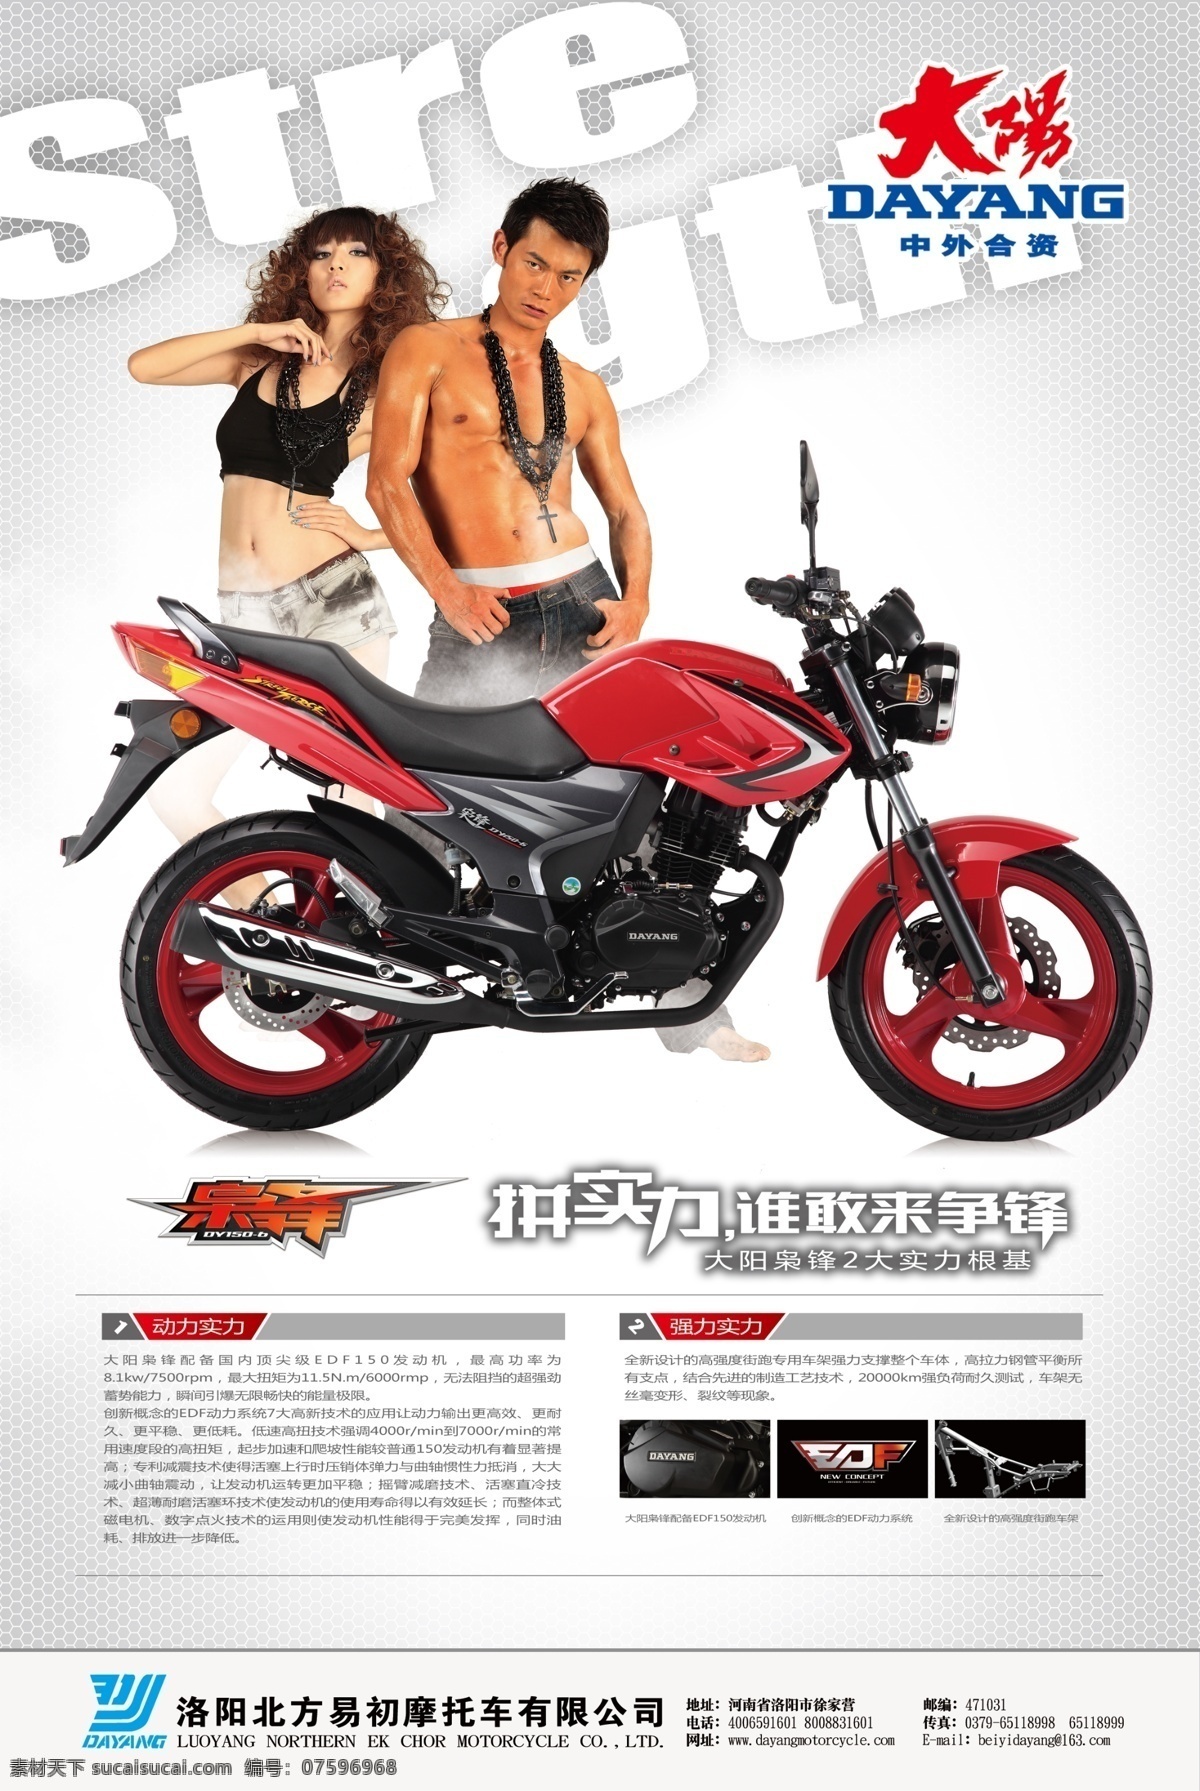 摩托车海报 大阳 摩托车 标志 酷男美女 枭锋 广告设计模板 源文件